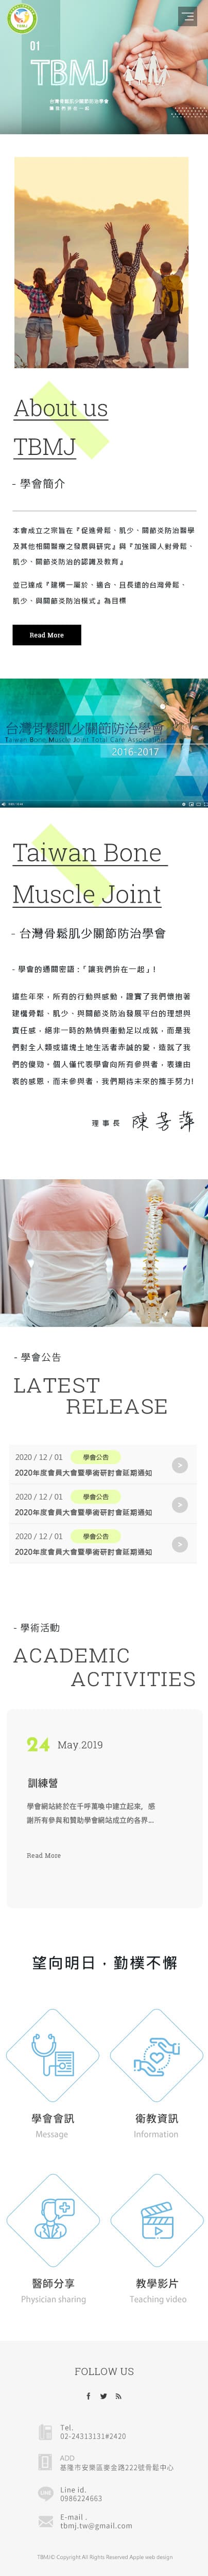 台灣骨鬆肌少關節防治學會-手機板縮圖